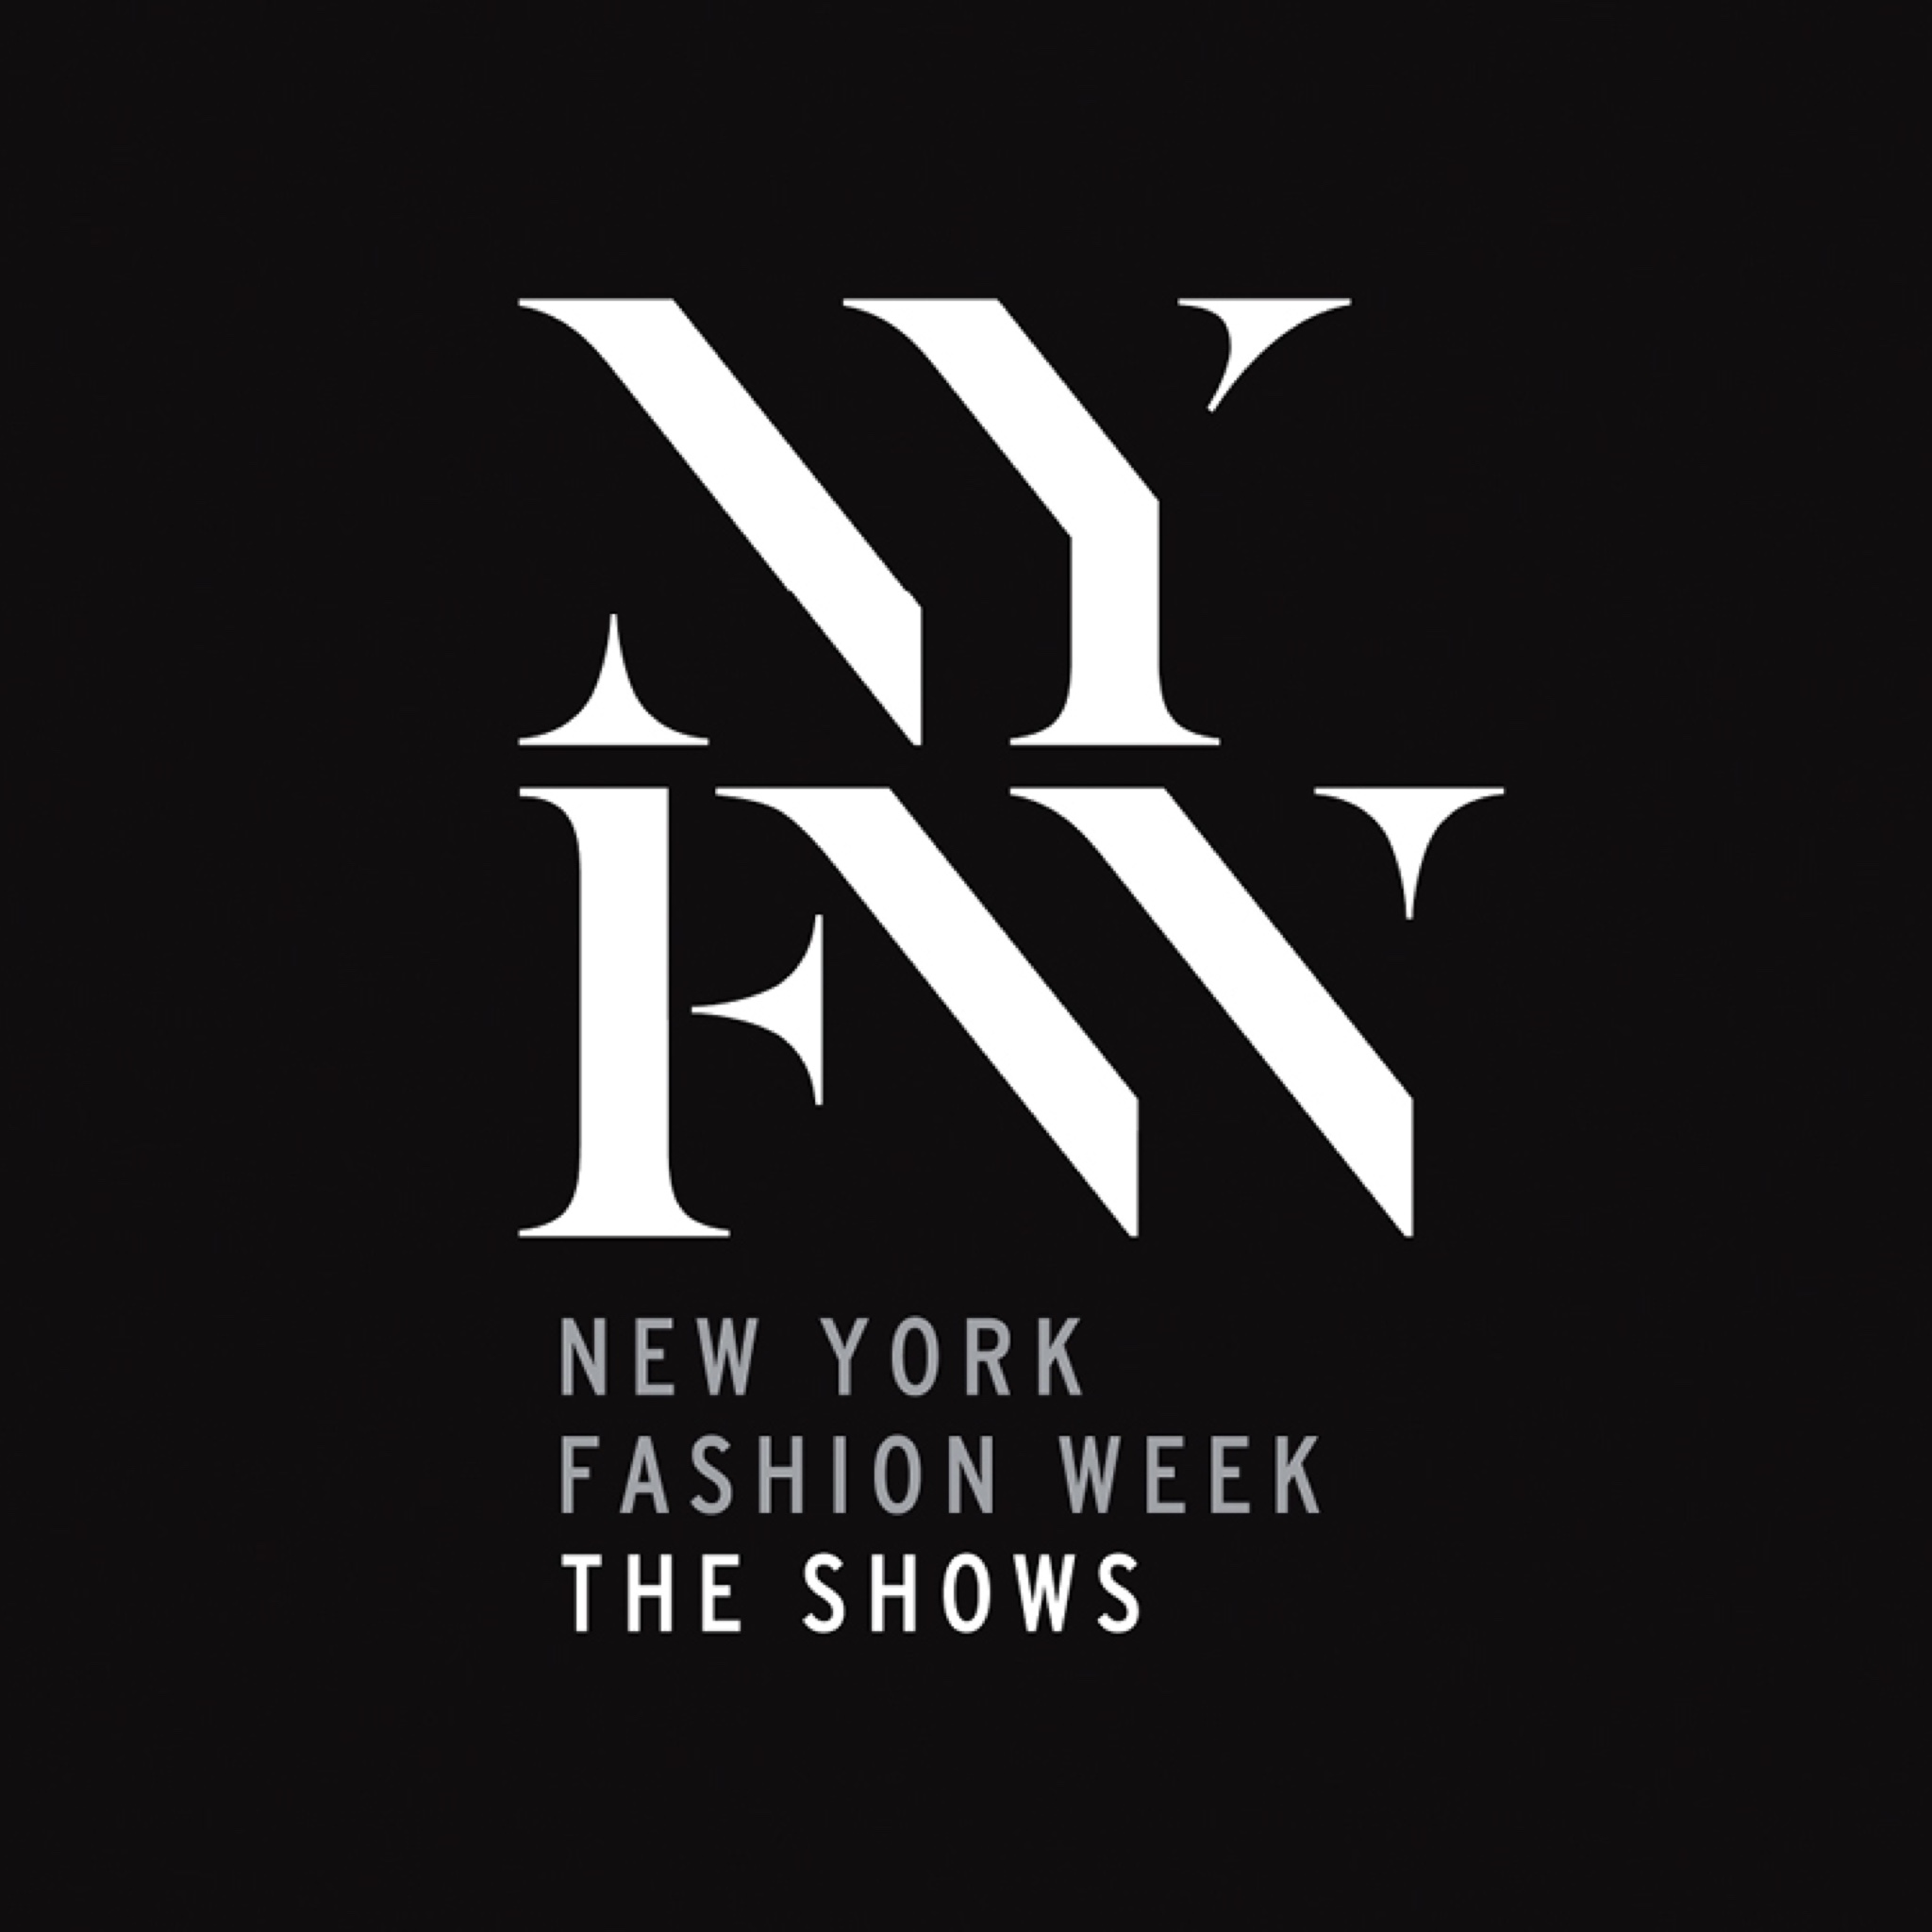 United States Altered State Productions ajansı, New York Fashion Week için, dijital pazarlamalarını, SEO ve işlerini büyütmesi konusunda yardımcı oldu